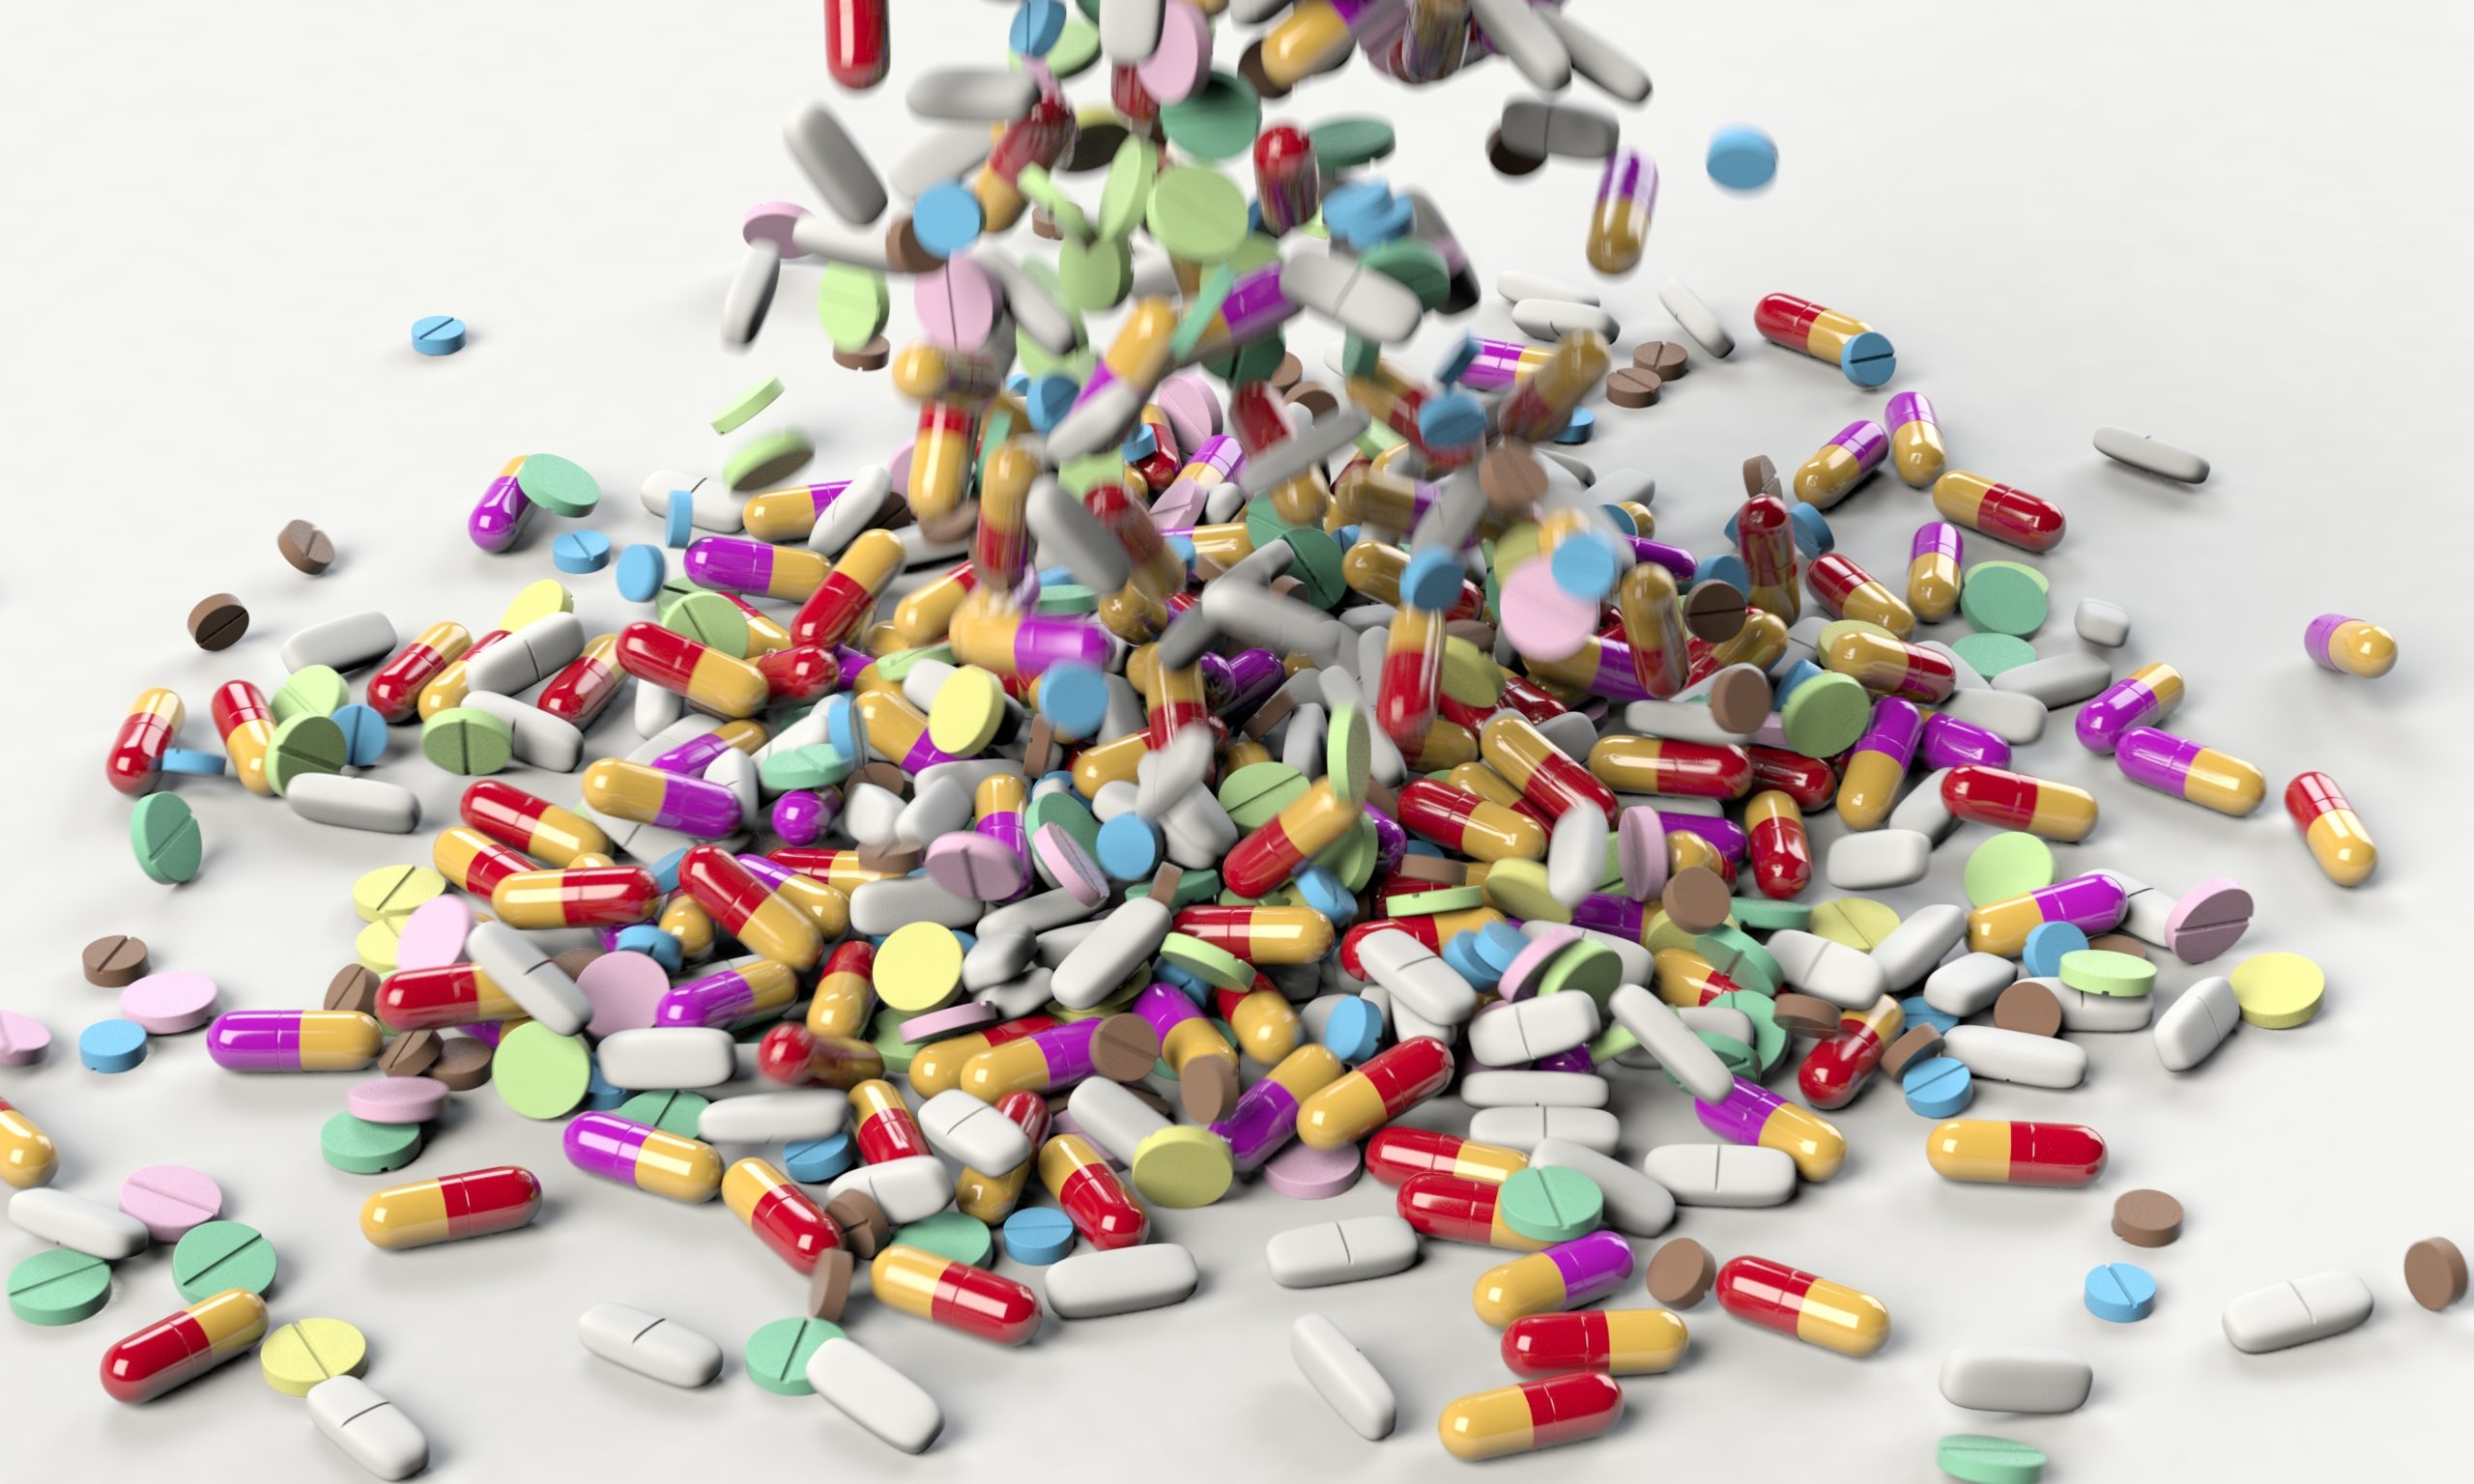 Image source: https://pixabay.com/illustrations/pills-medicine-medical-health-drug-3673645